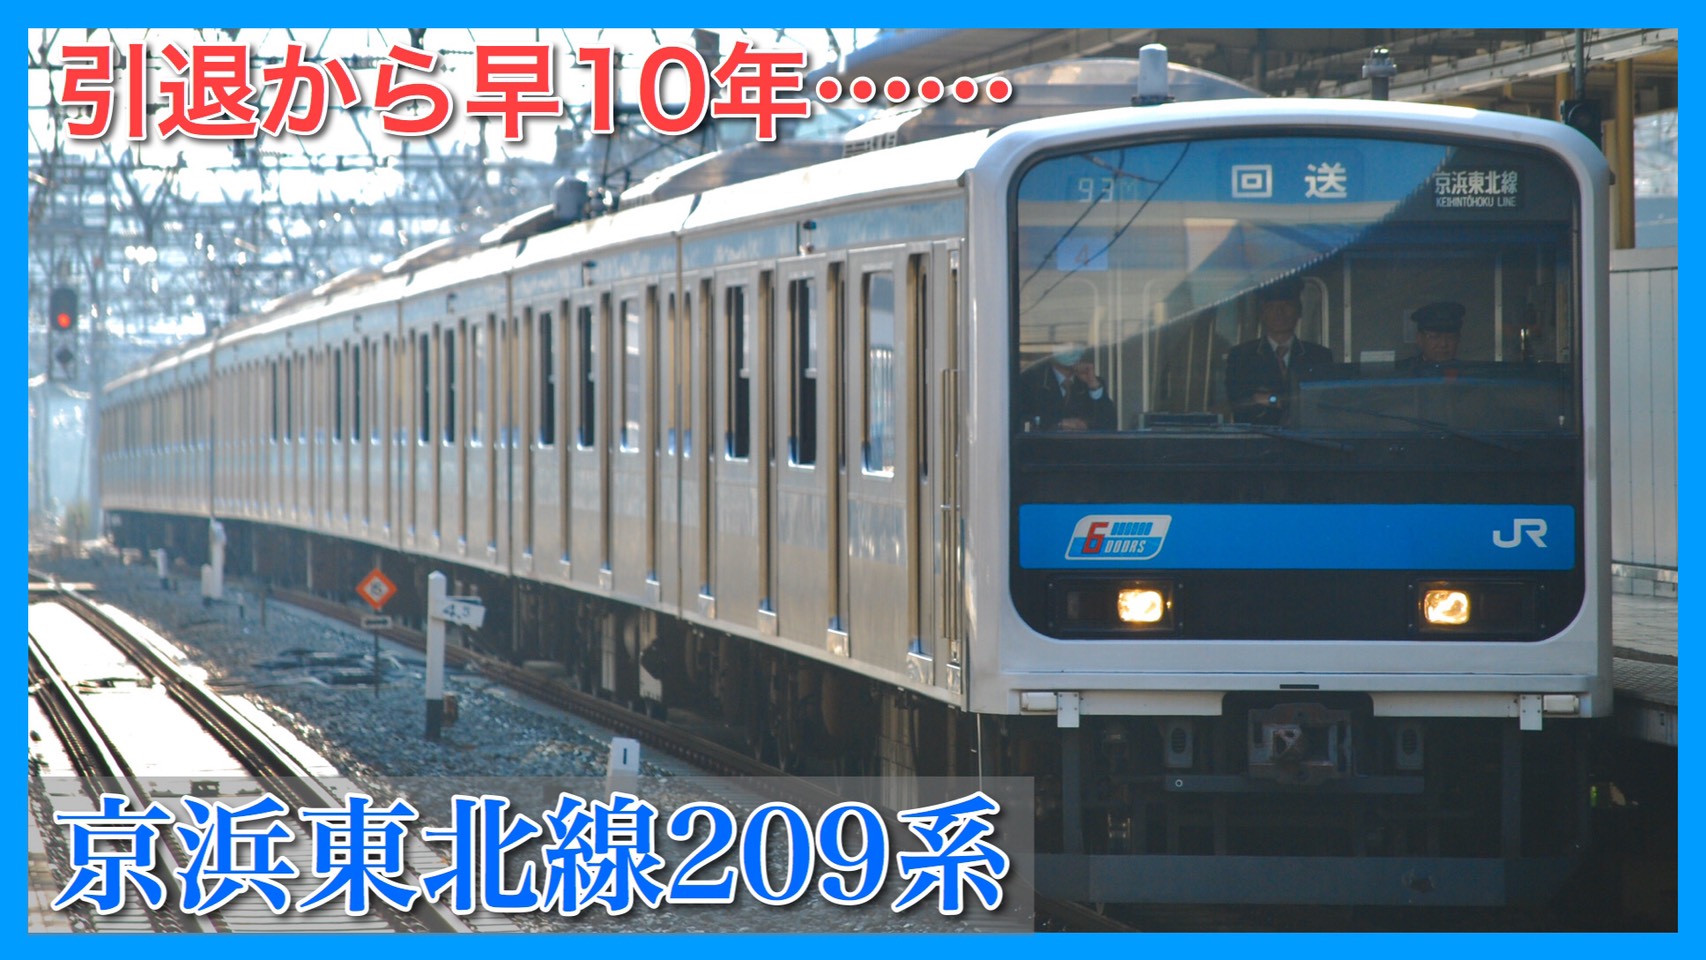 革命児 京浜東北線9系引退から早10年 山手線e231系と共に活躍 鉄道ファンの待合室